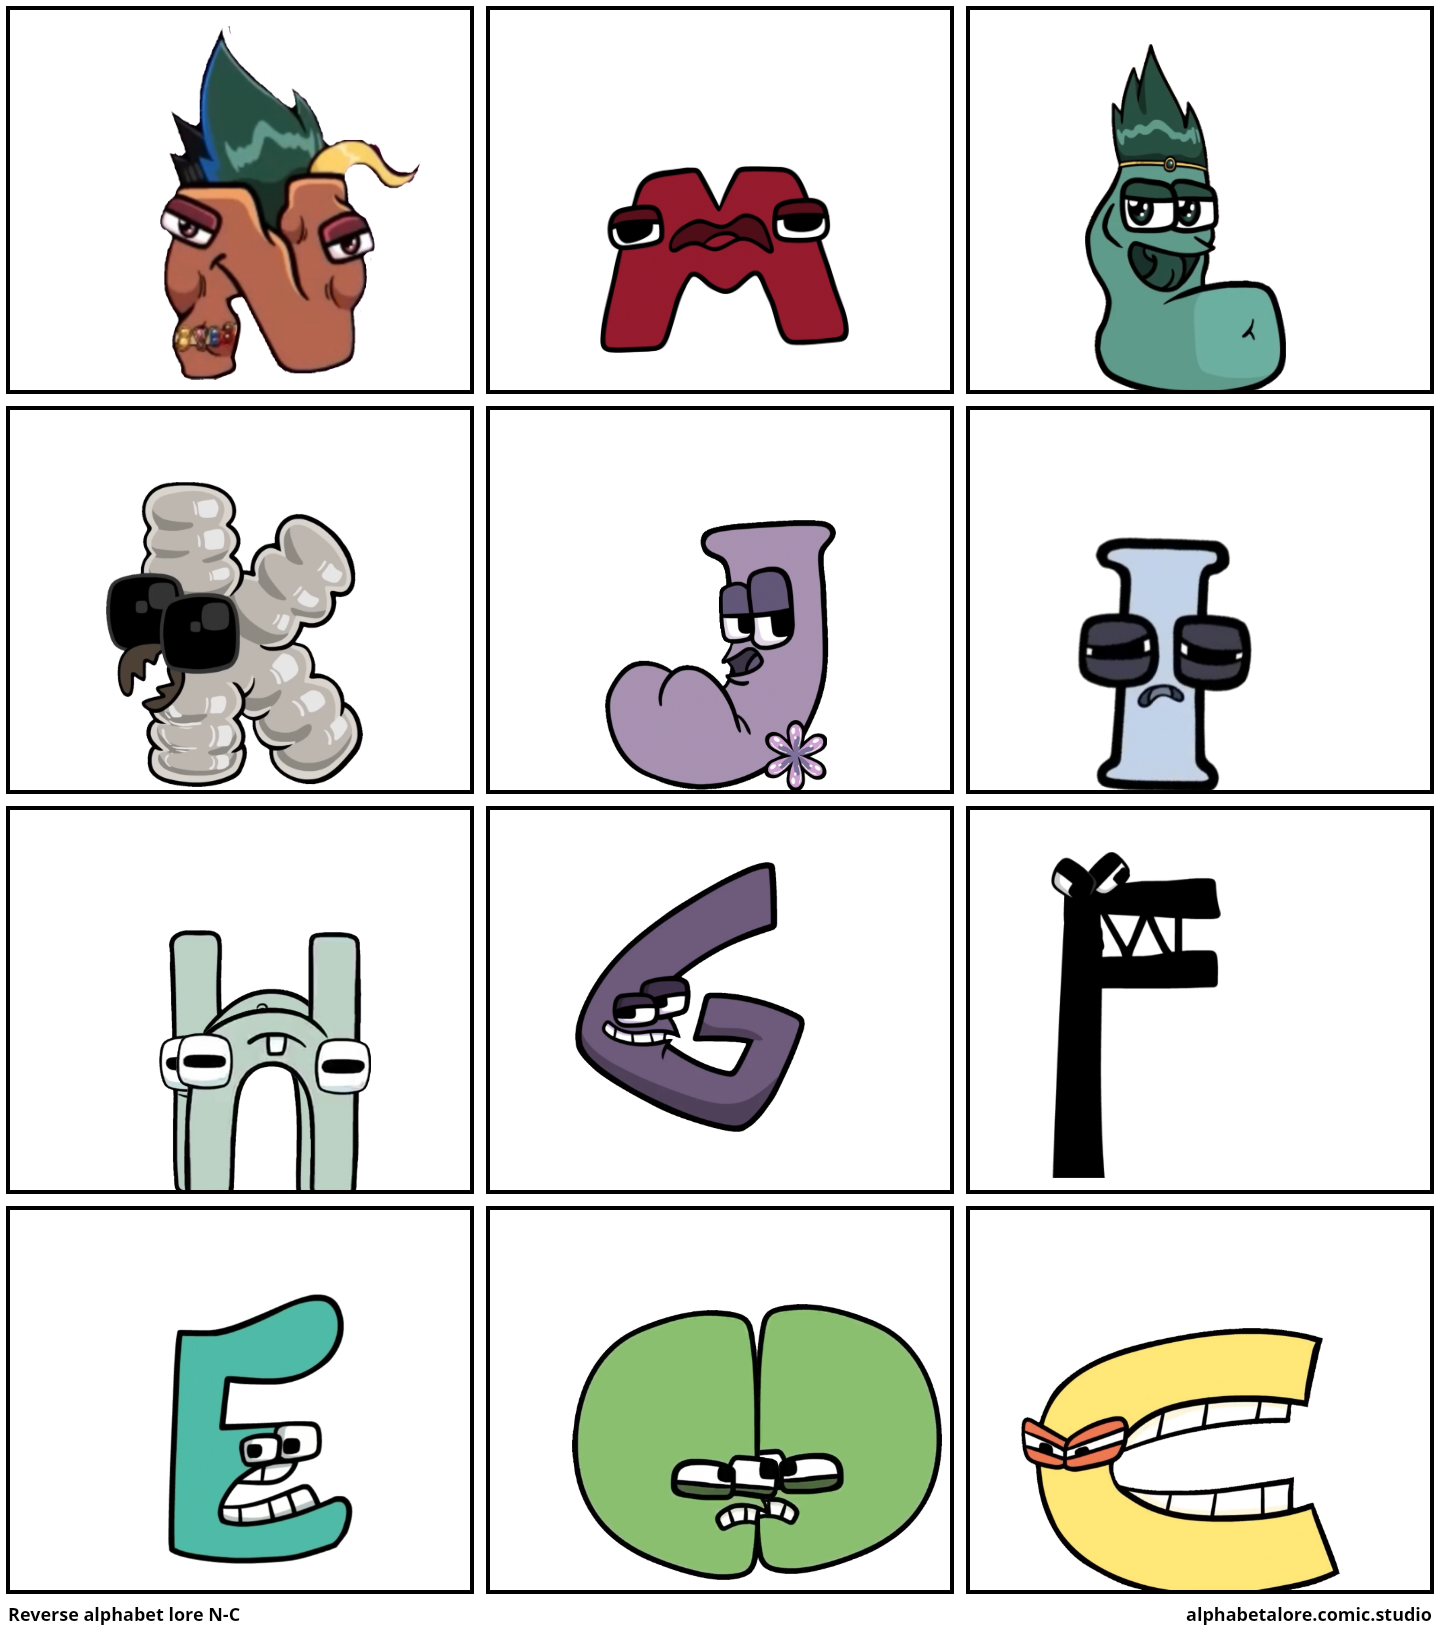 Reverse alphabet lore N-C - Comic Studio